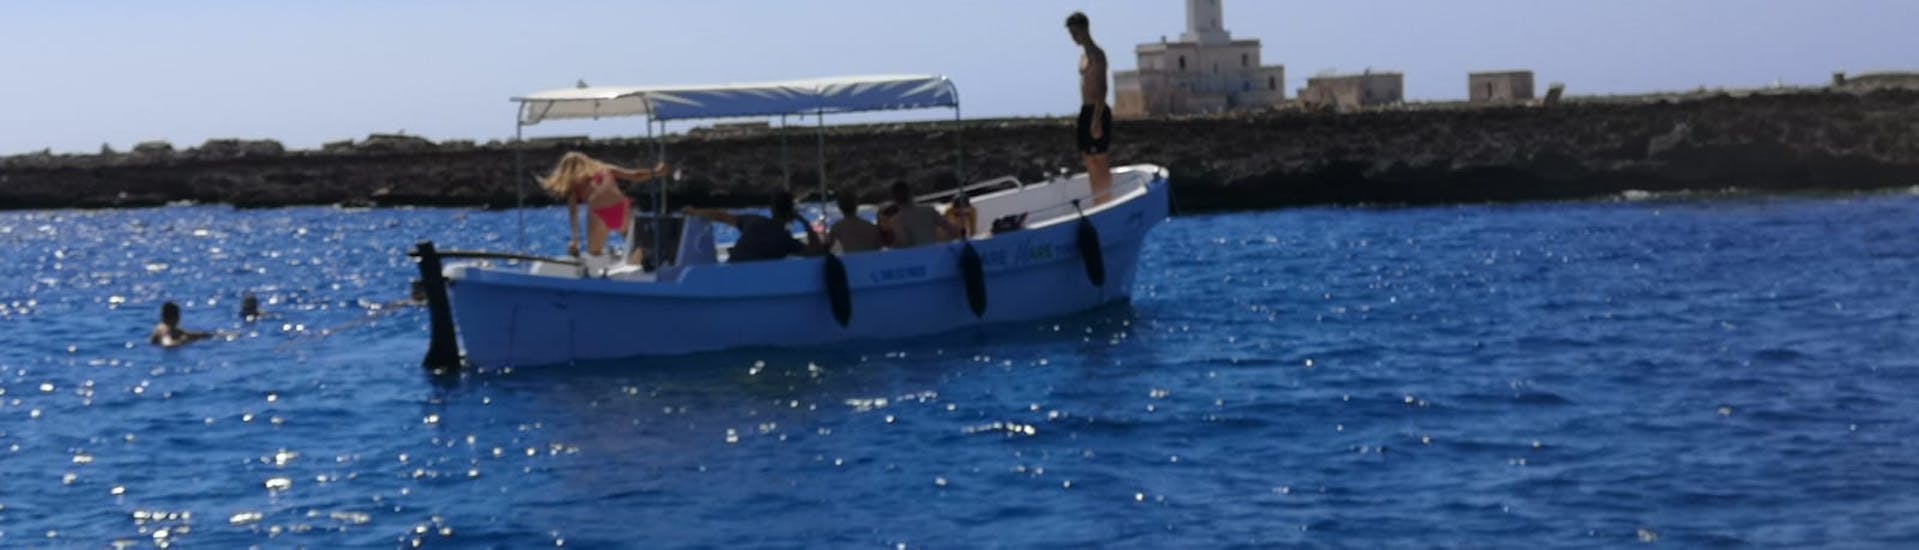 Bootstour von Gallipoli zur Insel Sant'Andrea mit Schnorcheln.